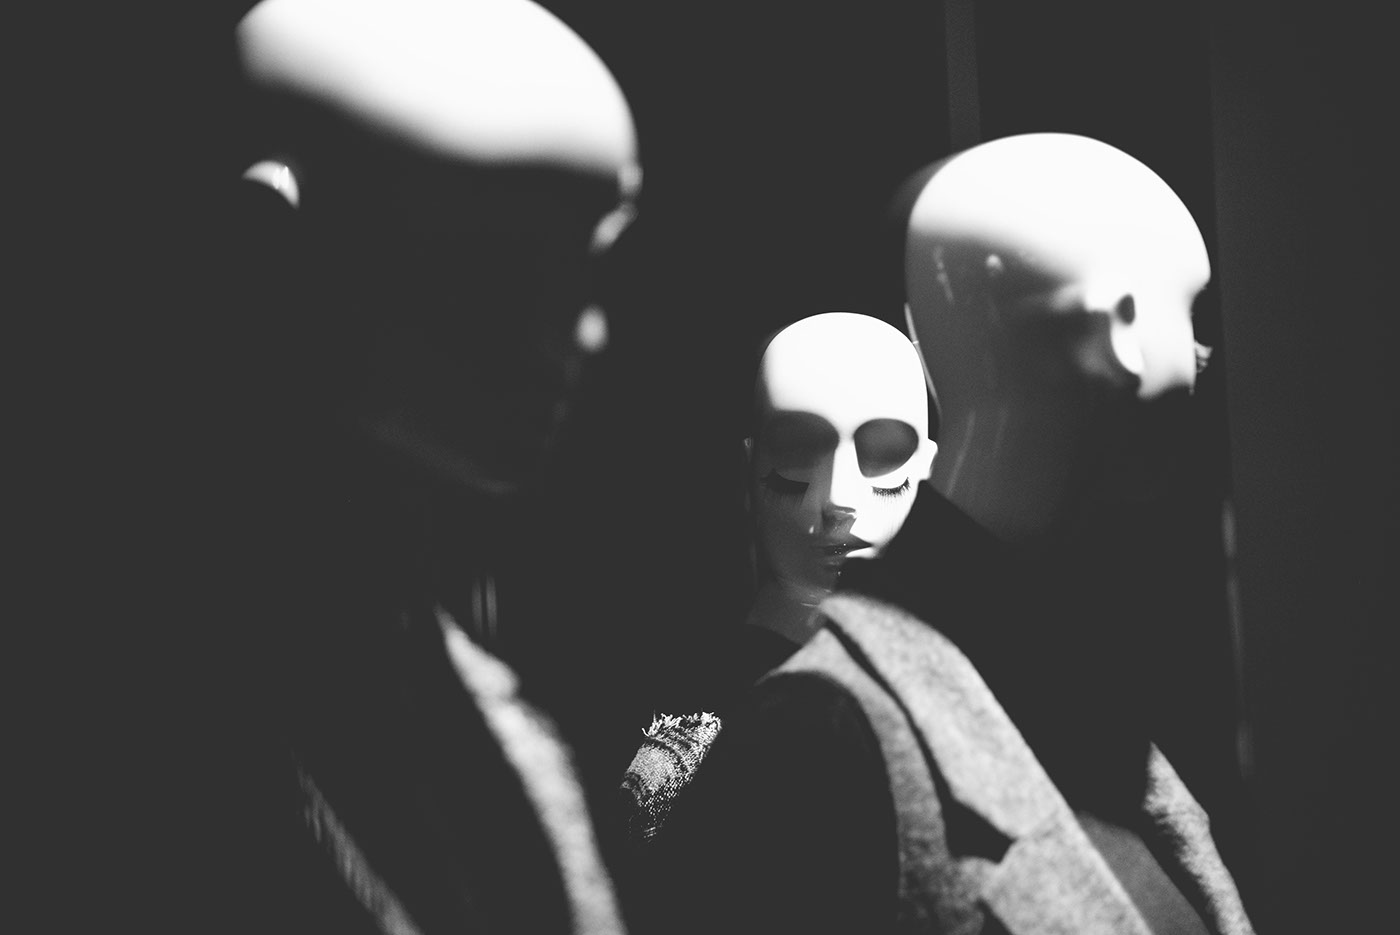 art Project dolls dummies plastic black White bnw blackandwhite portraits shape light night Shadows emotion